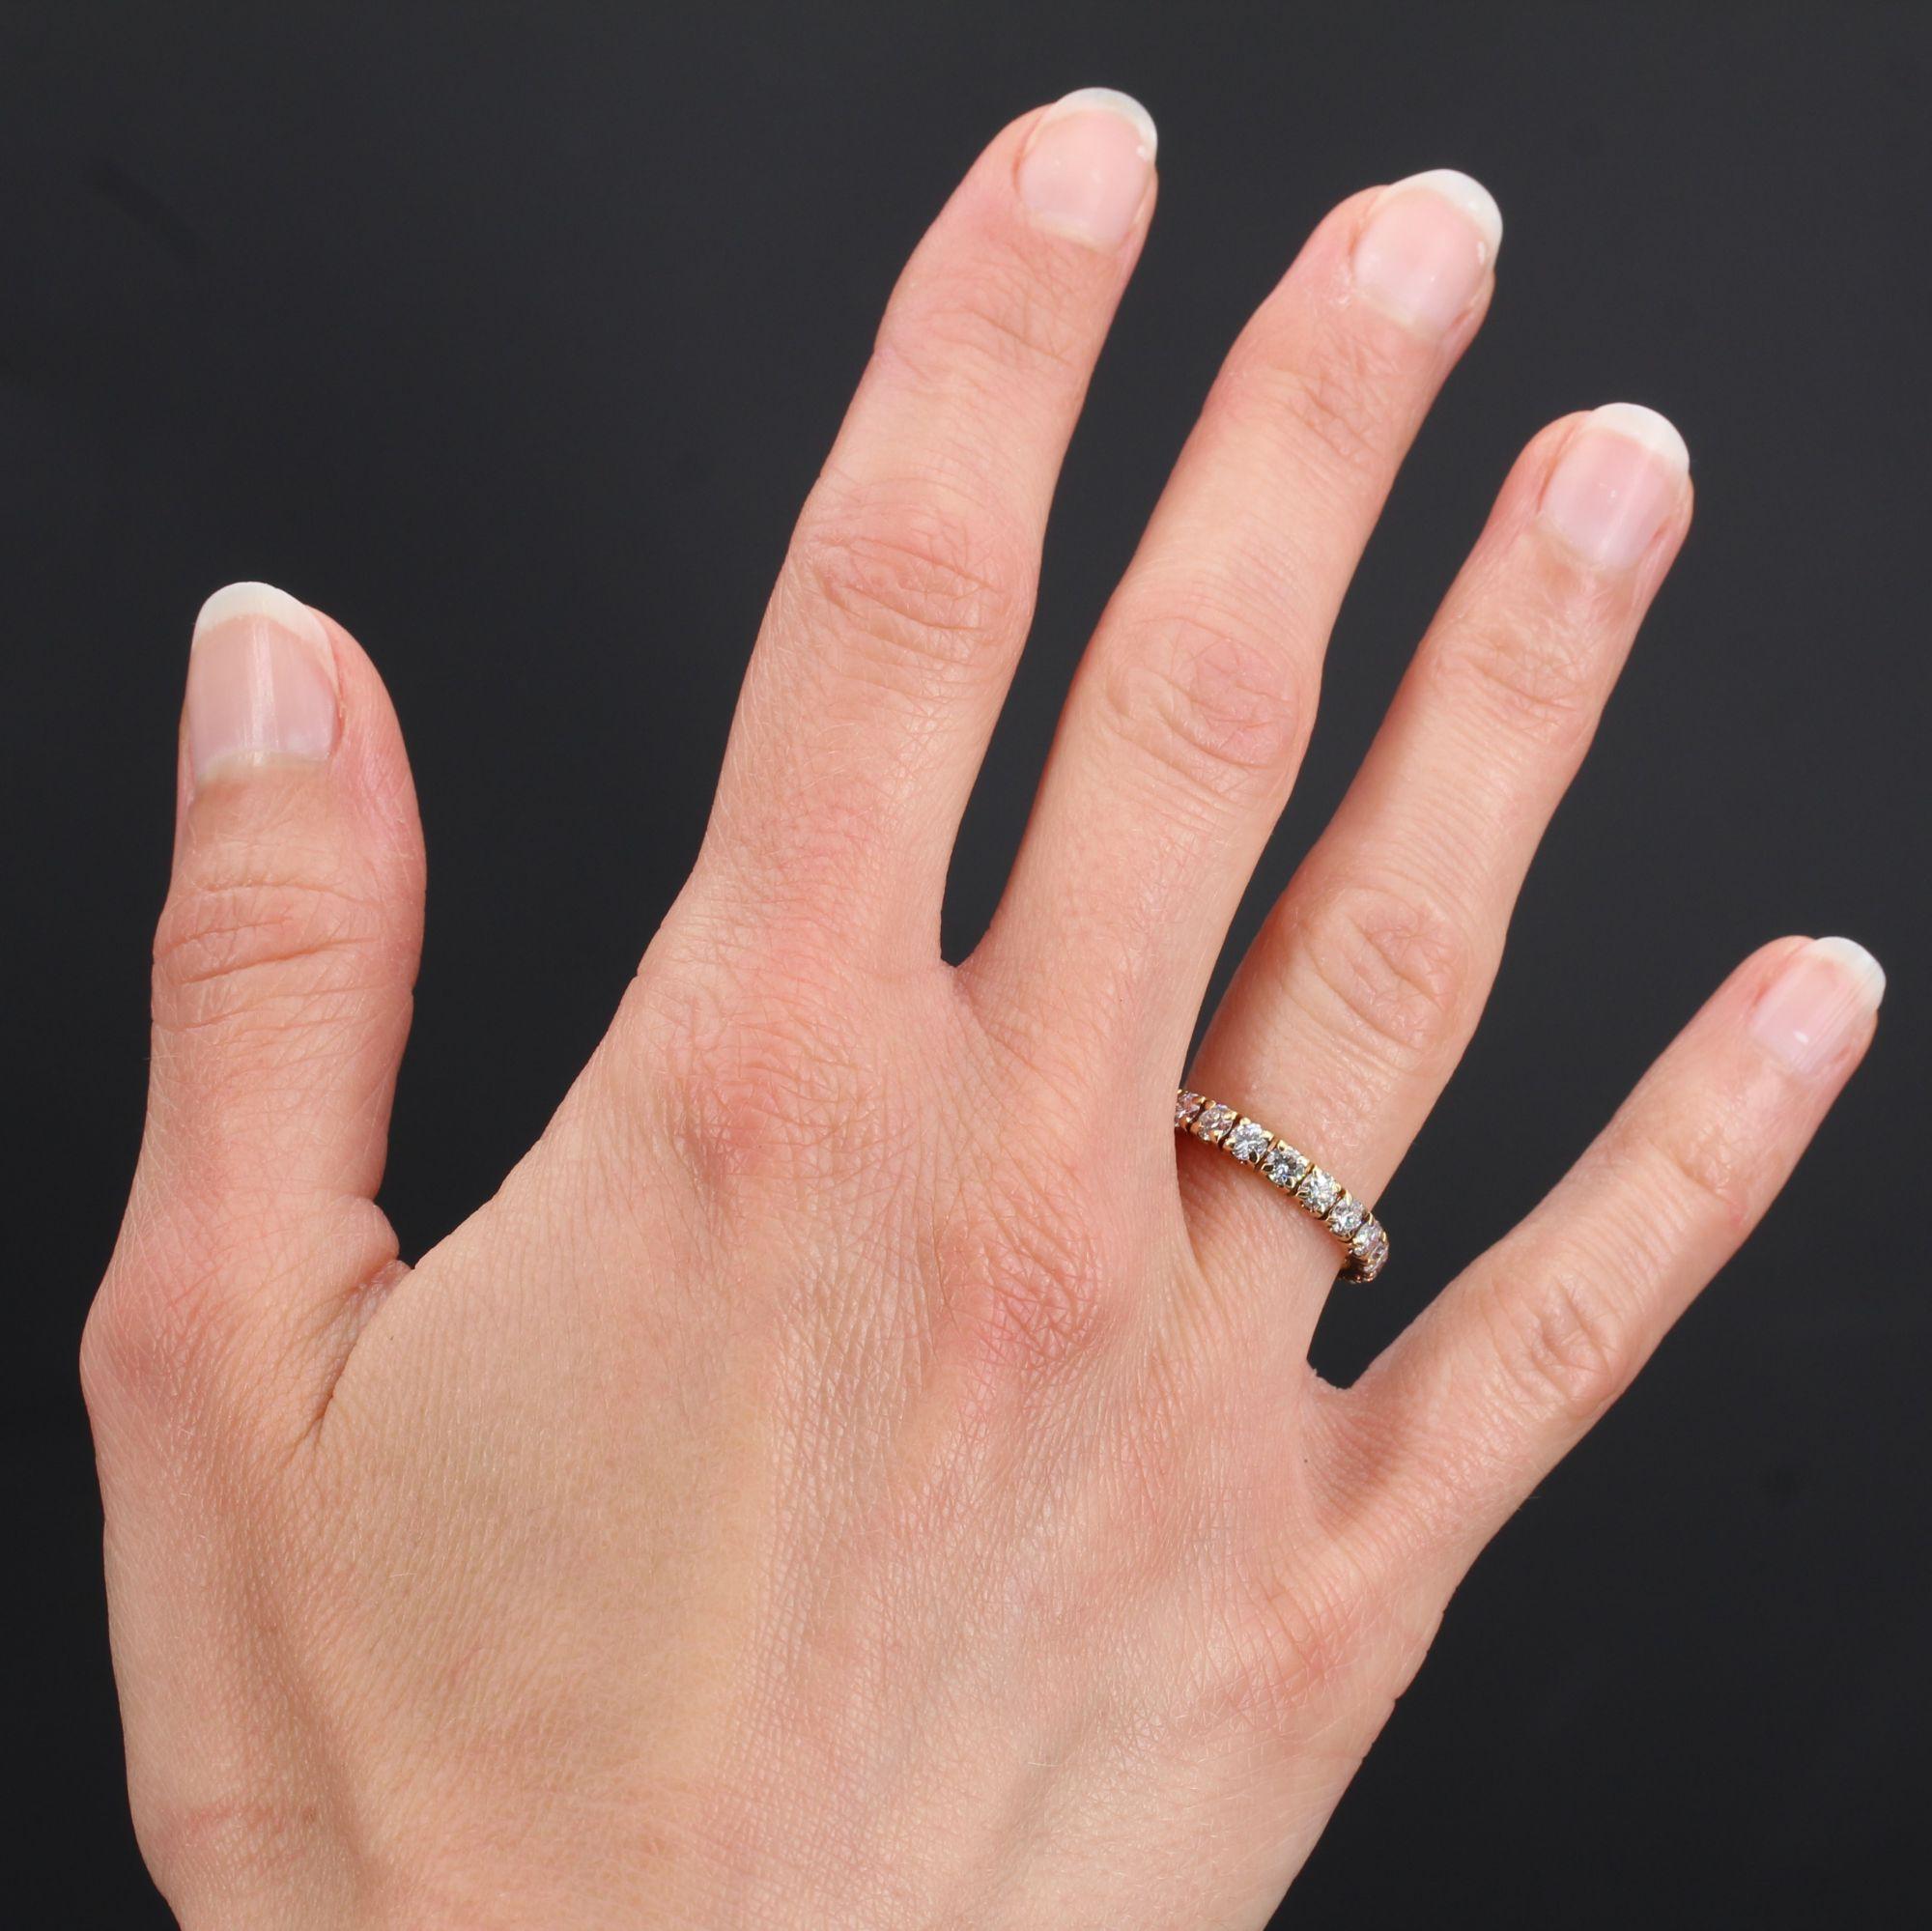 Ring aus 18 Karat Gelbgold.
Der Ring ist auf dem gesamten Umfang mit Diamanten im Brillantschliff besetzt.
Gesamtgewicht der Diamanten: ca. 1,50 Karat.
Höhe: 2,9 mm, Dicke: 1,9 mm.
Gesamtgewicht des Juwels: ca. 2,5 g.
US Größe : 6 ; Keine